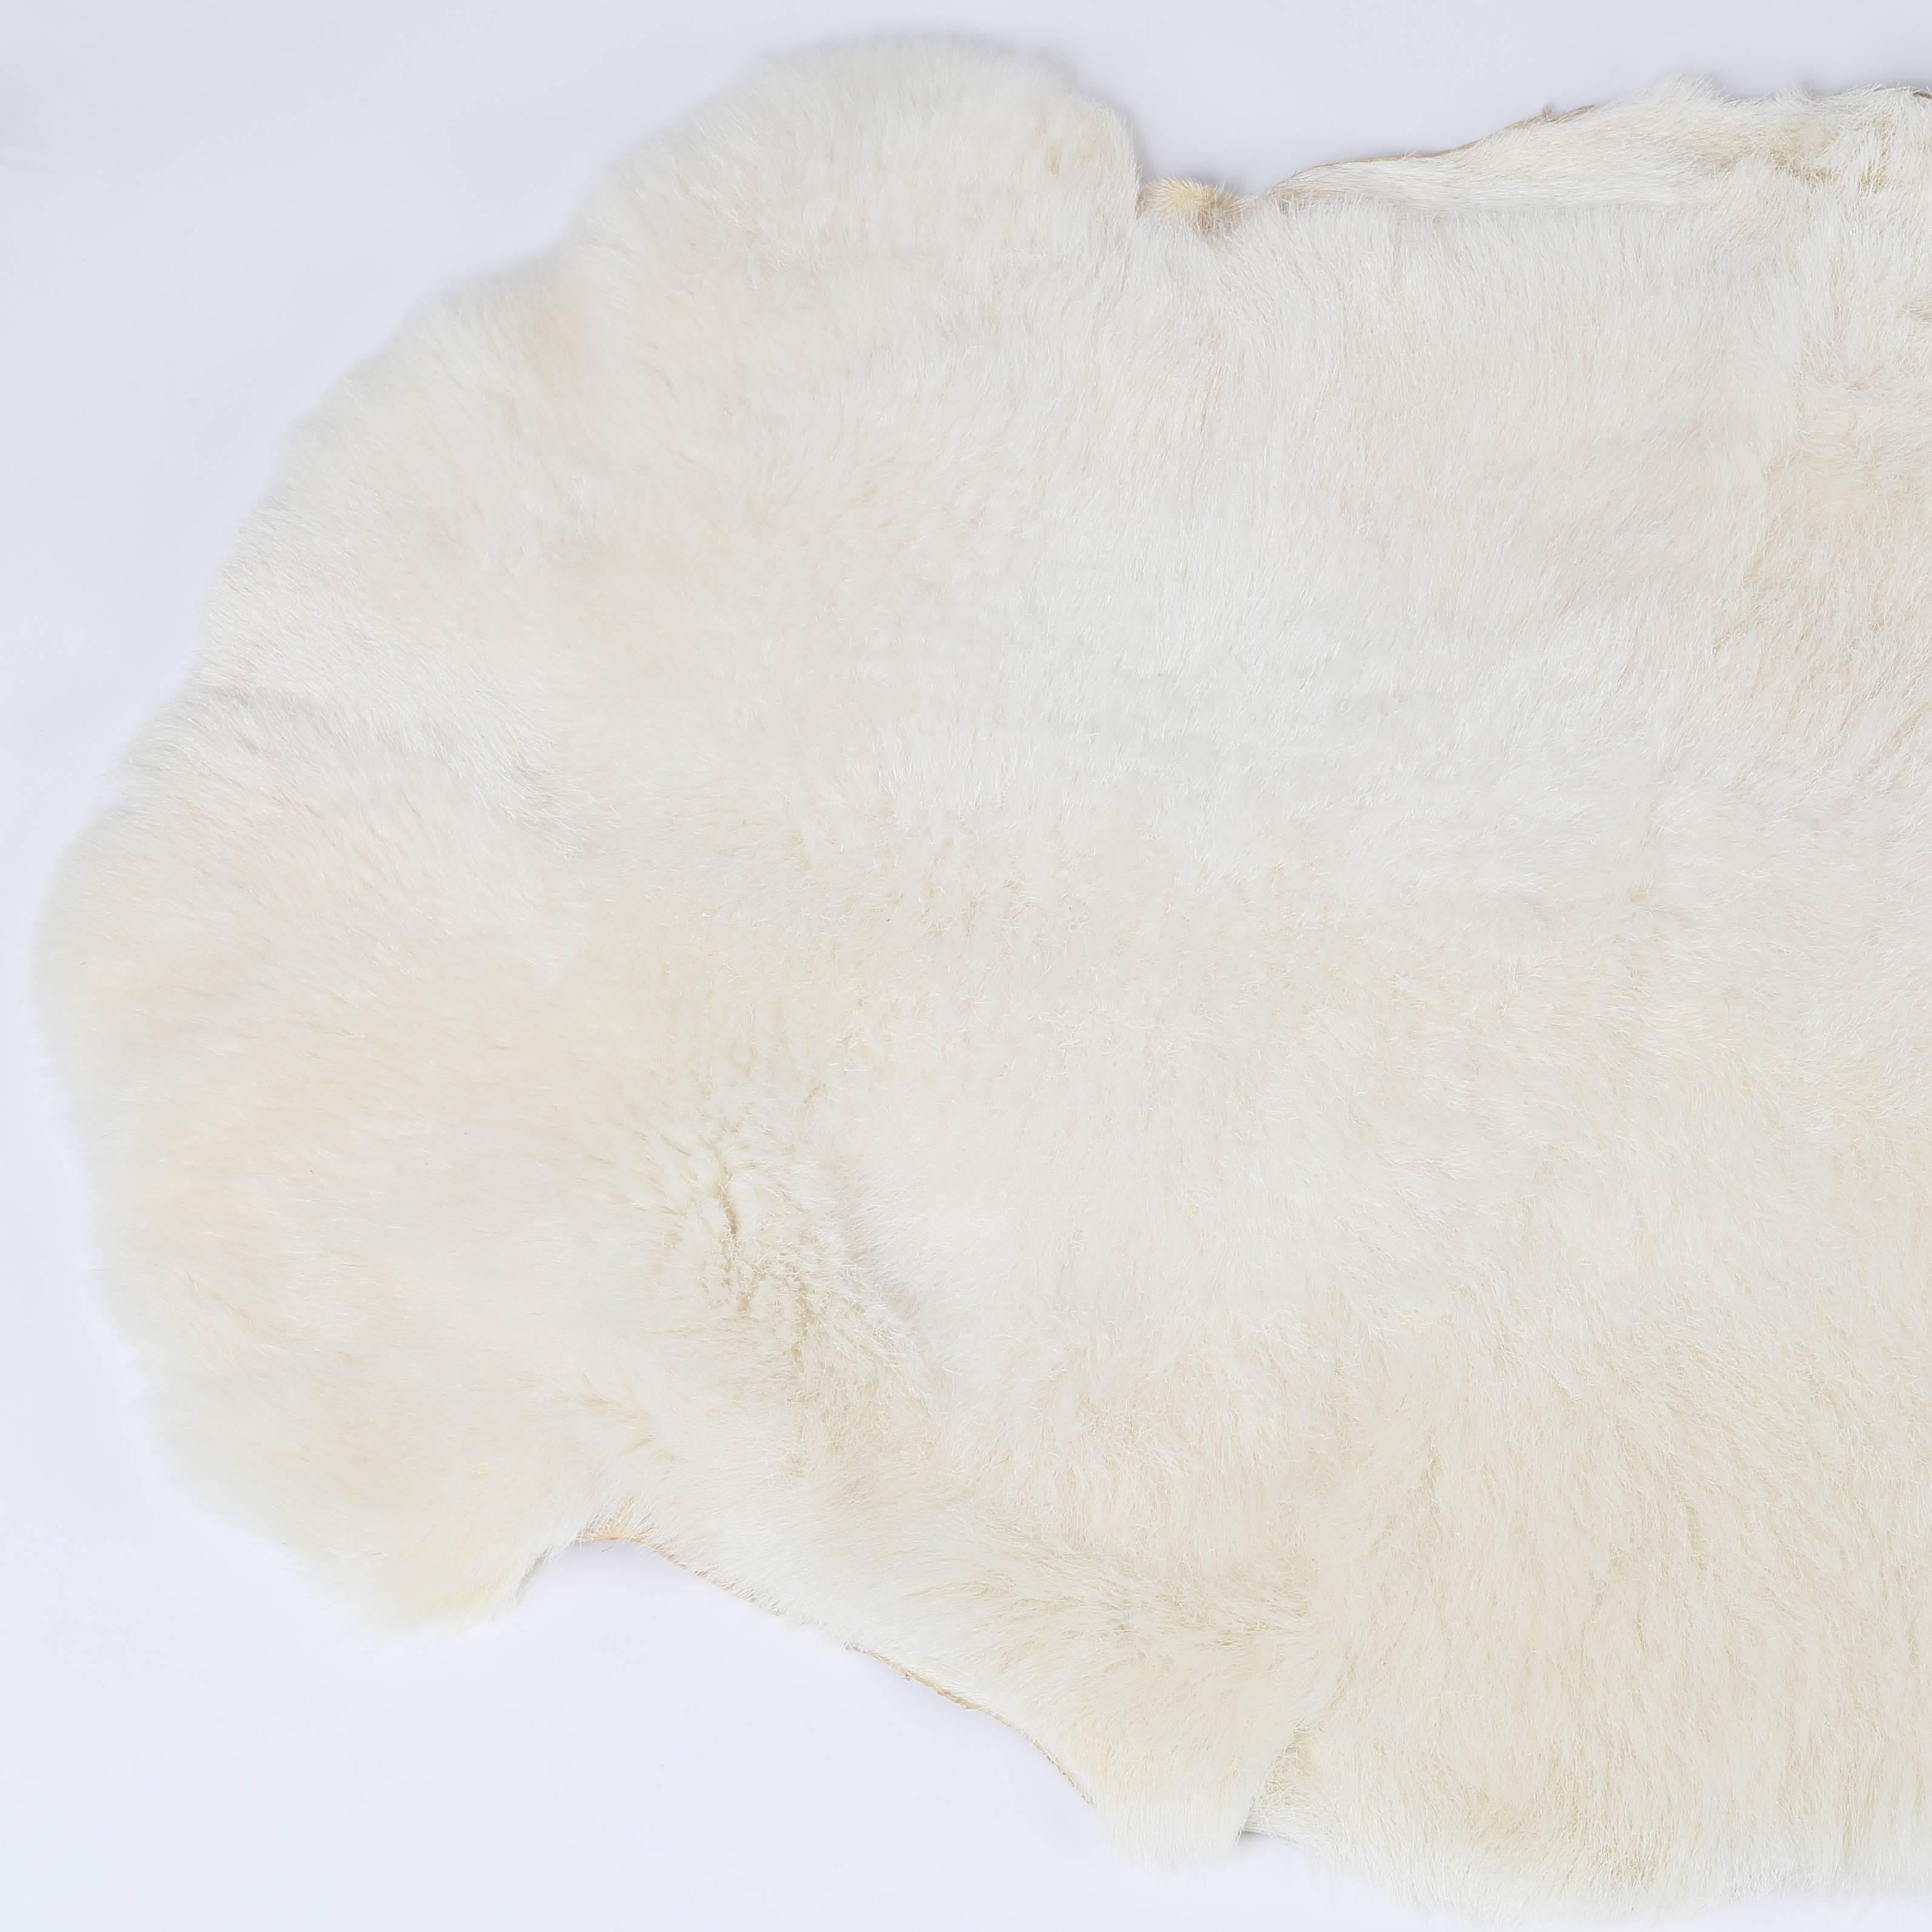 American White Katahdin Hair Sheep Throw or Rug